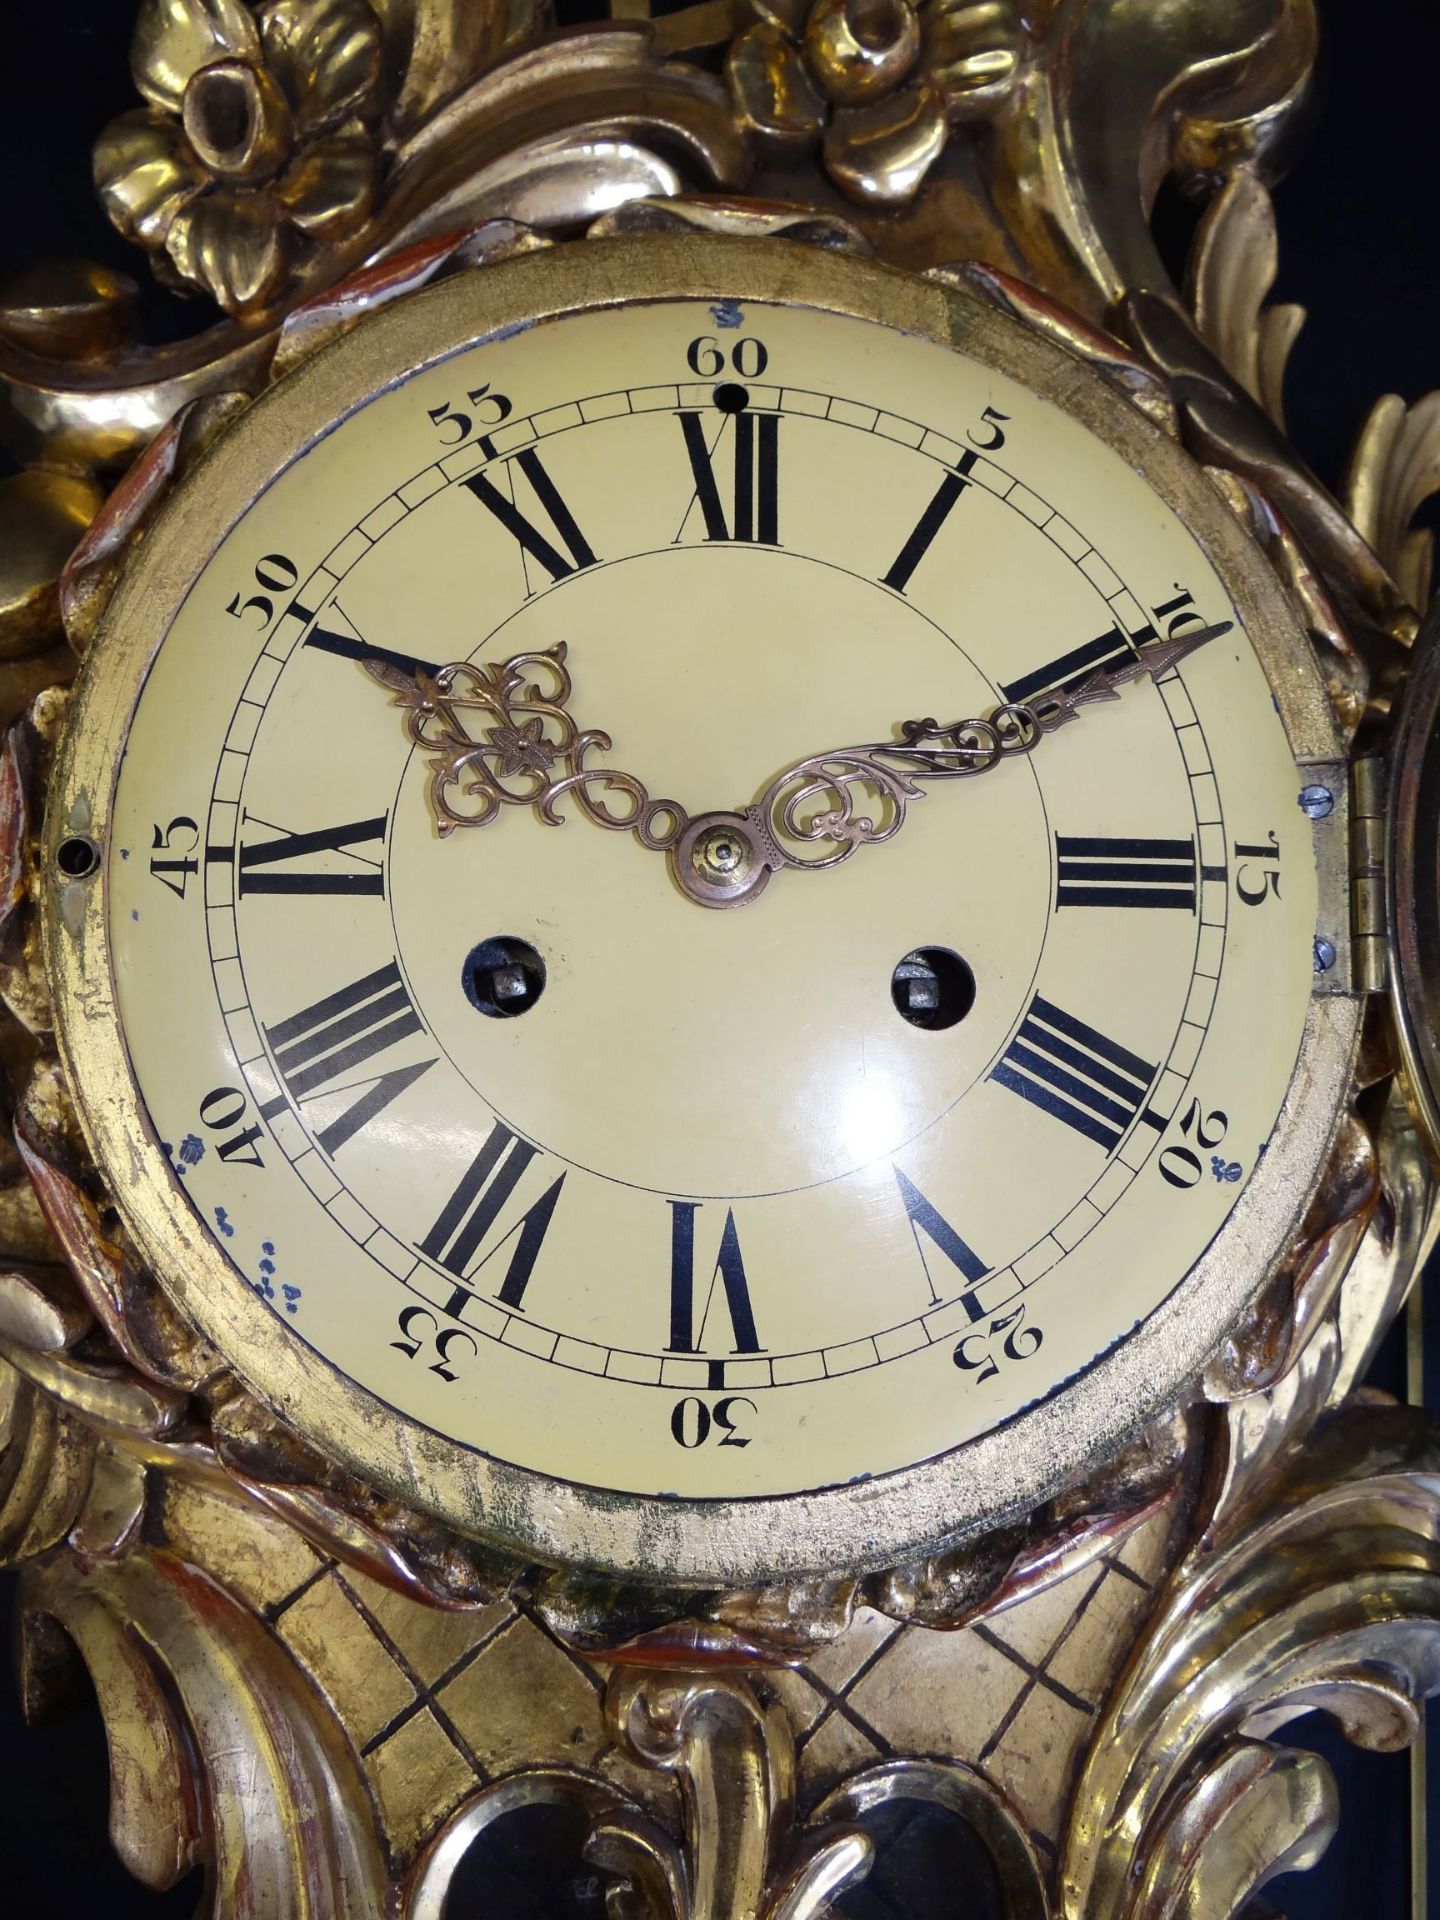 gr. Kartell-Uhr, Holz vergoldet, , H-62 cm, B-32 cm, guter Zustand, leider falsches , zu langes - Bild 4 aus 10